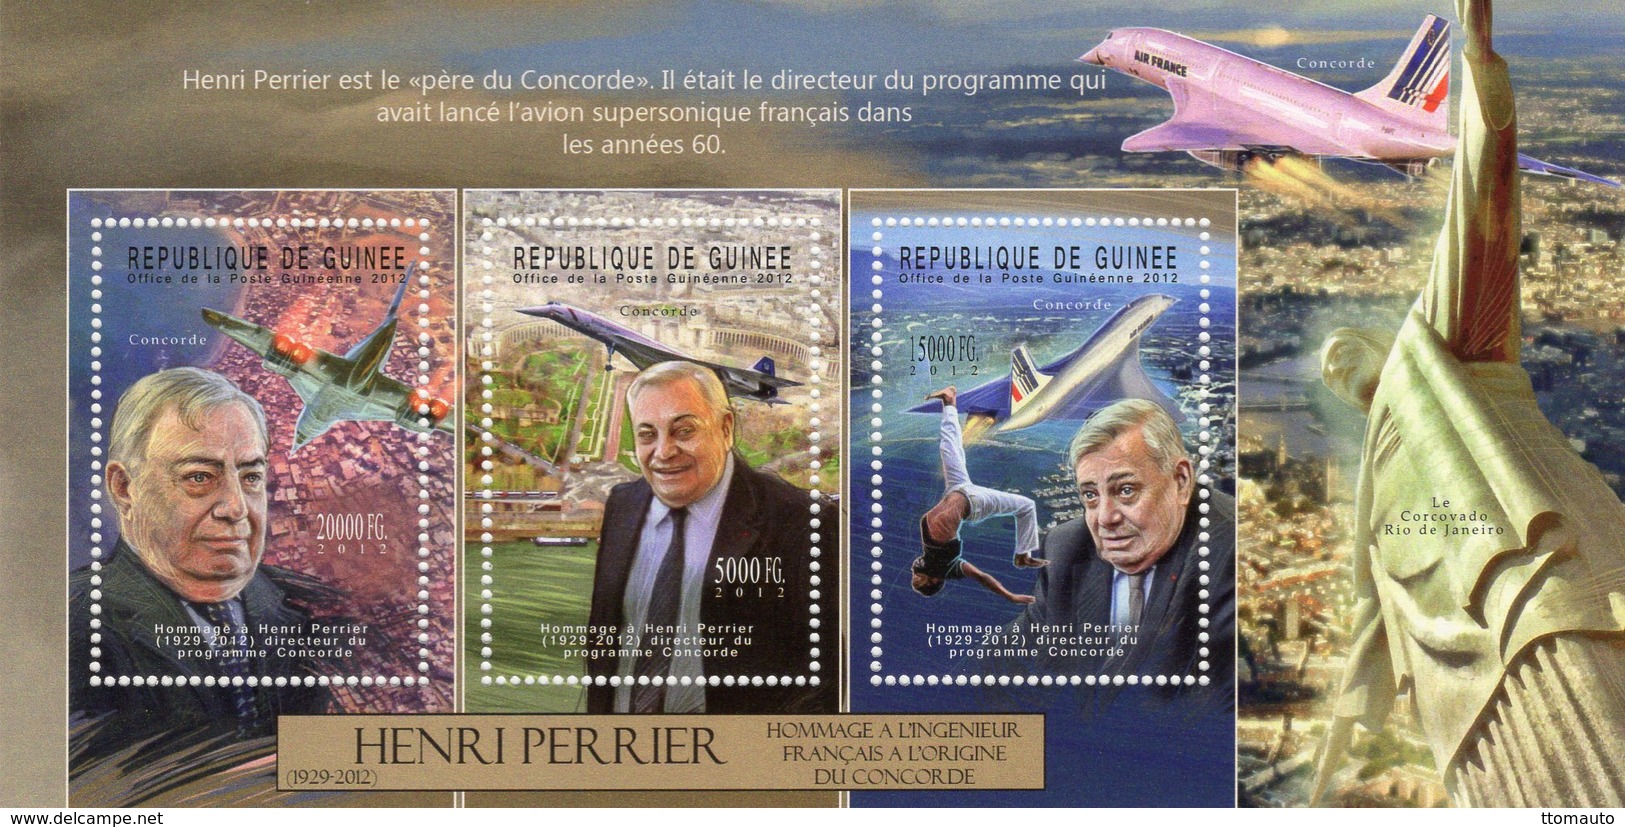 HENRI PERRIER - L'Ingenieur Francais Du CONCORDE  - Republique De Guinée 2012  -  3v Sheet - Neuf/Mint/MNH - Concorde